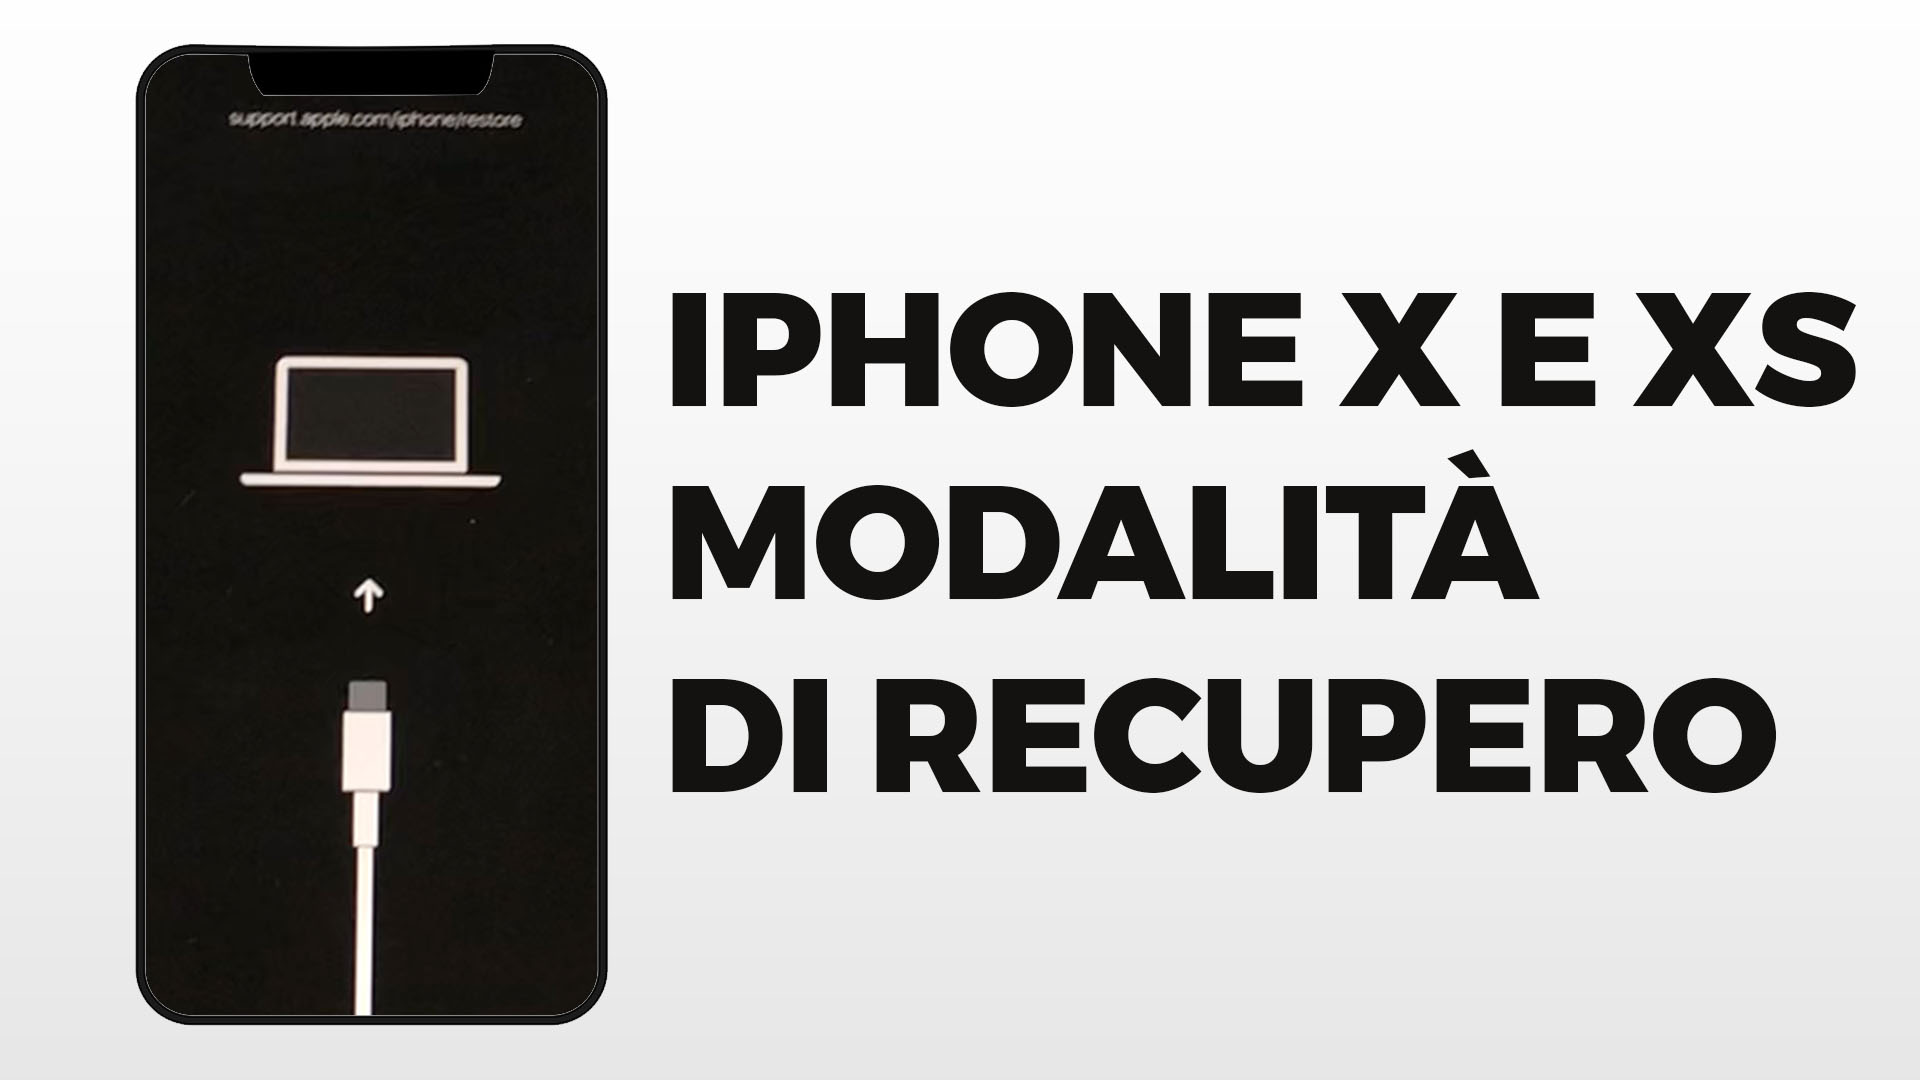 iPhone-X-Xs-modalita-di-recupero